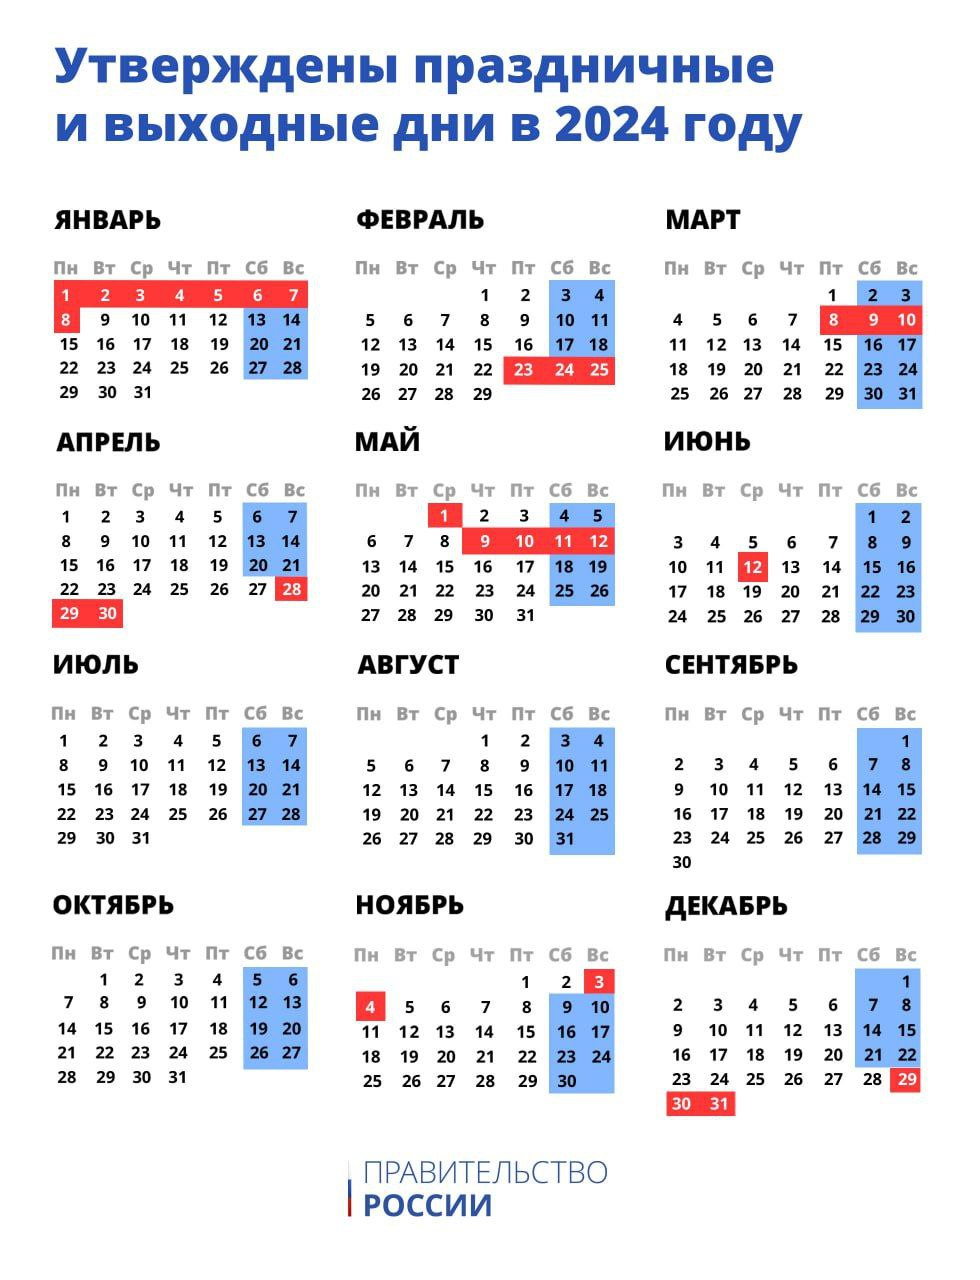 Календарь праздничных и выходных дней на 2024 год